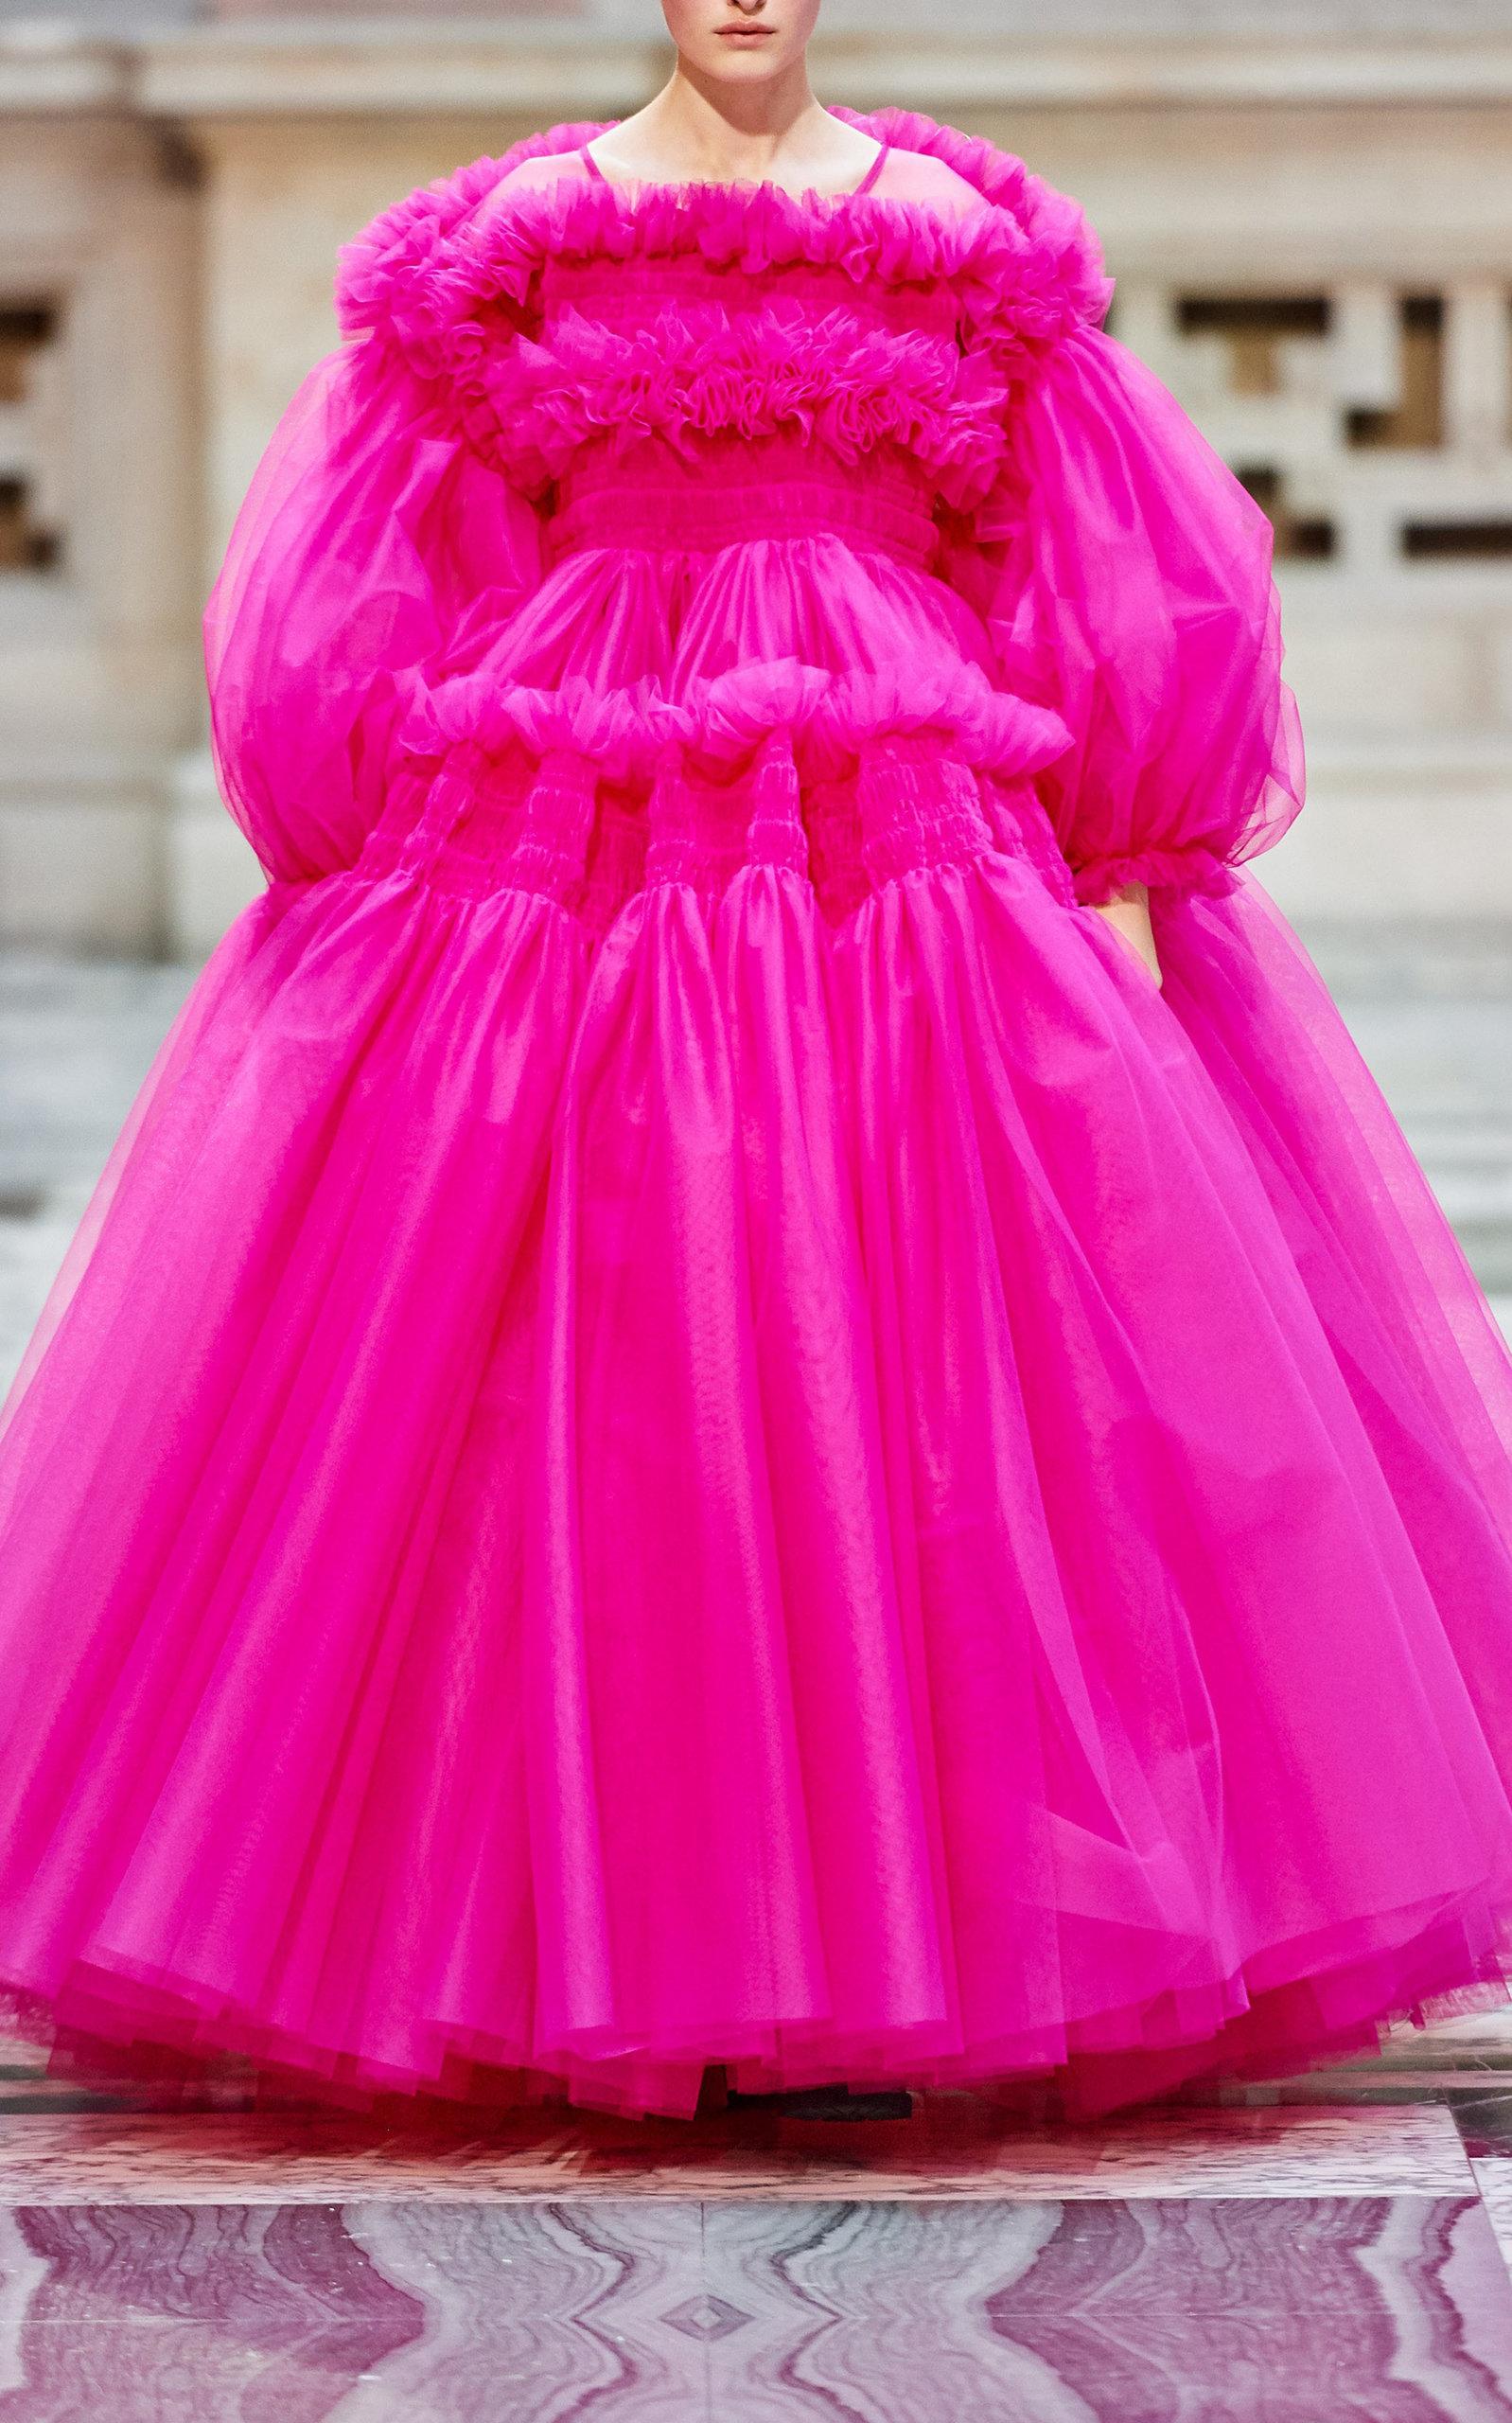 Buy > pink molly goddard dress > in stock